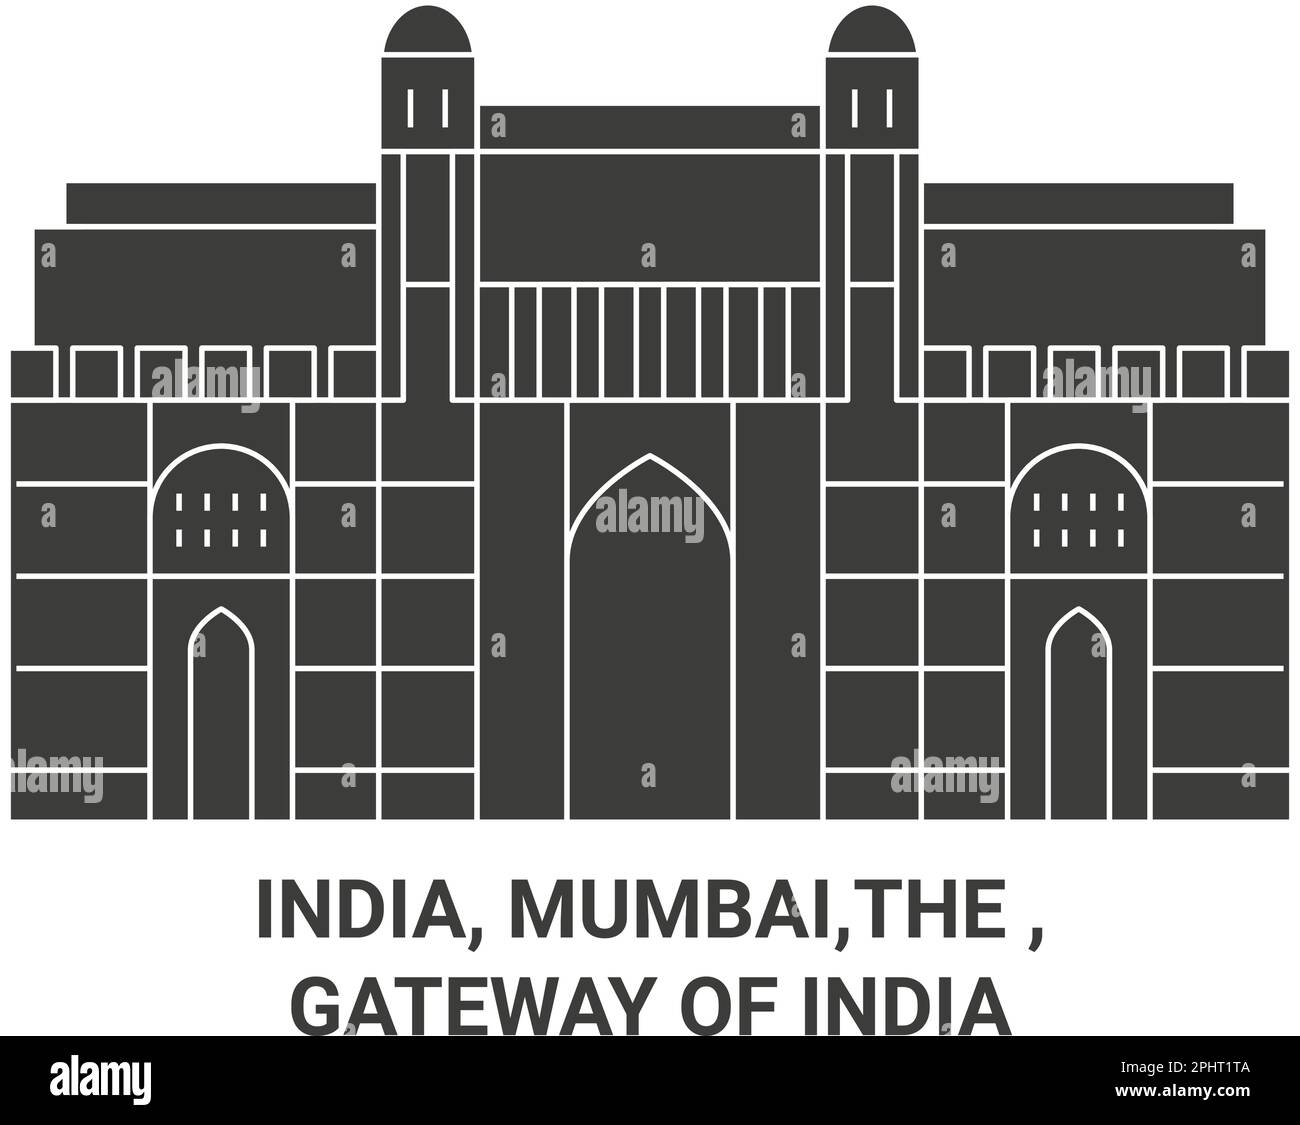 Indien, Mumbai, das , das Gateway of India Reise-Wahrzeichen-Vektorbild Stock Vektor